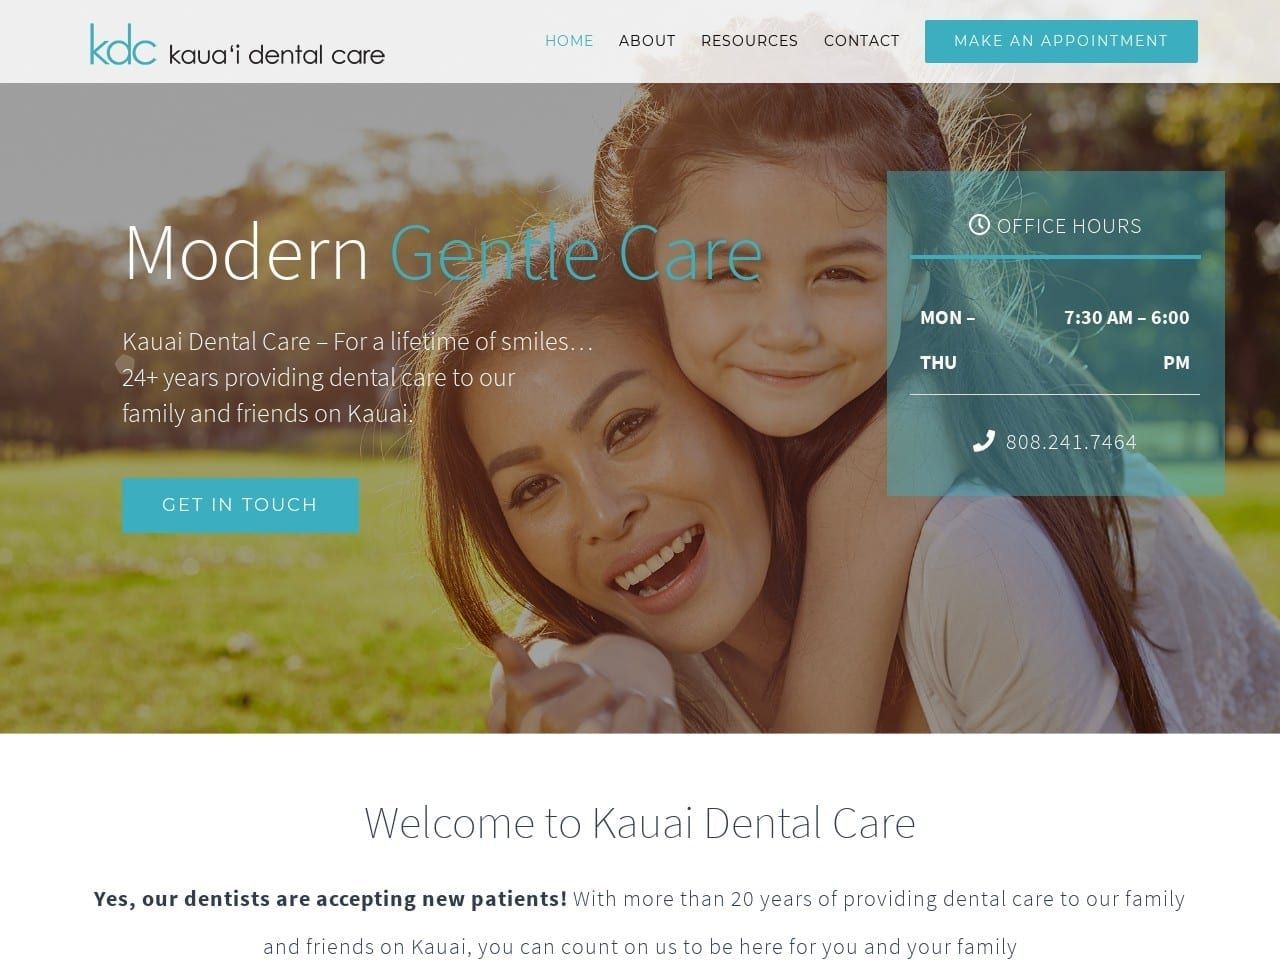 Kauai Dental Care Website Screenshot from kauaidentalcare.com